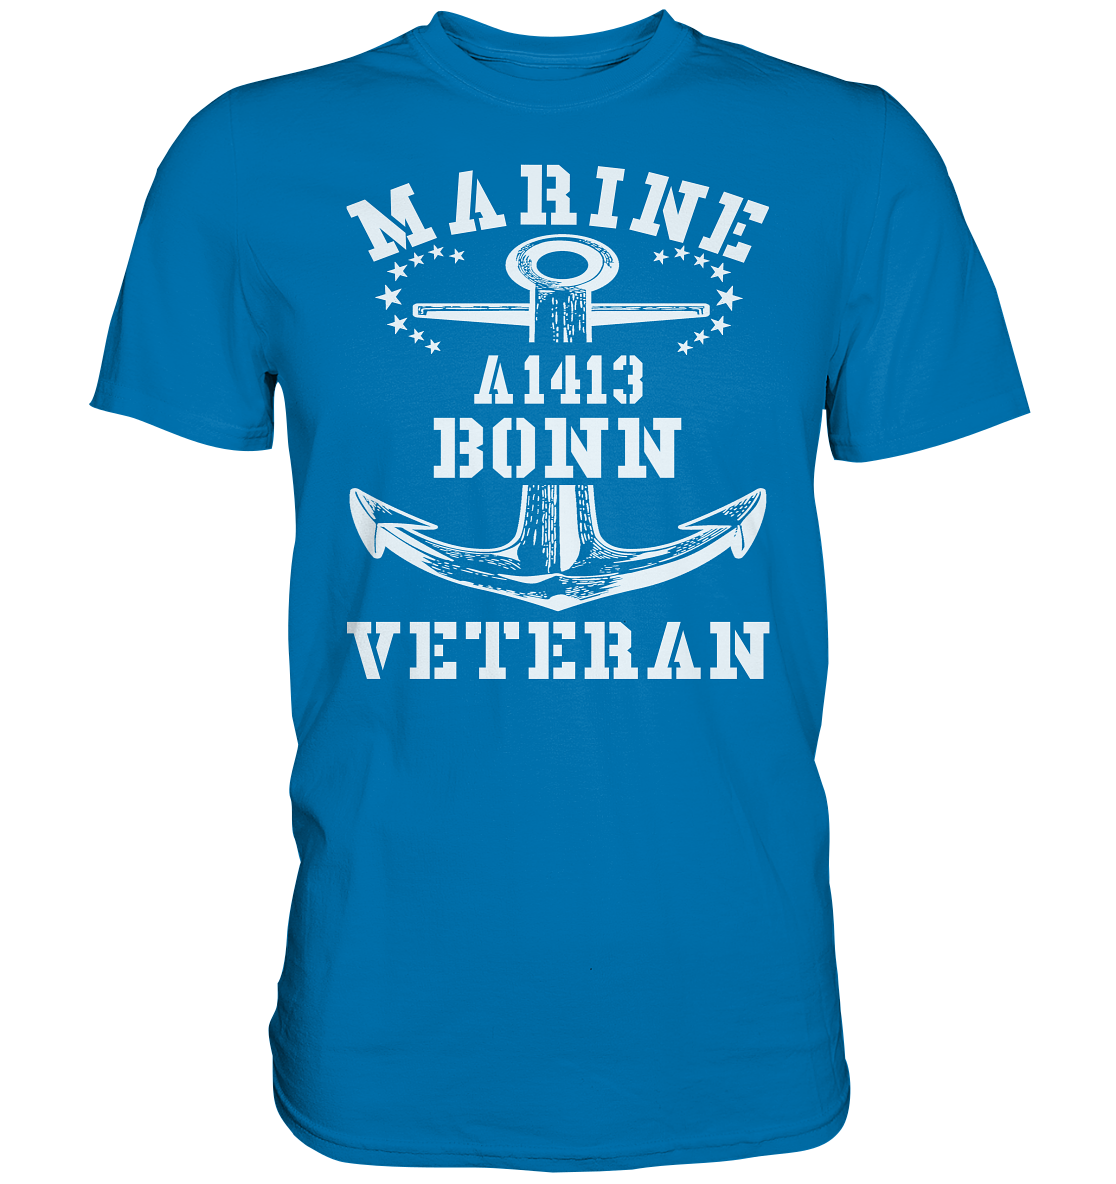 EGV A1413 BONN Marine Veteran - Premium Shirt